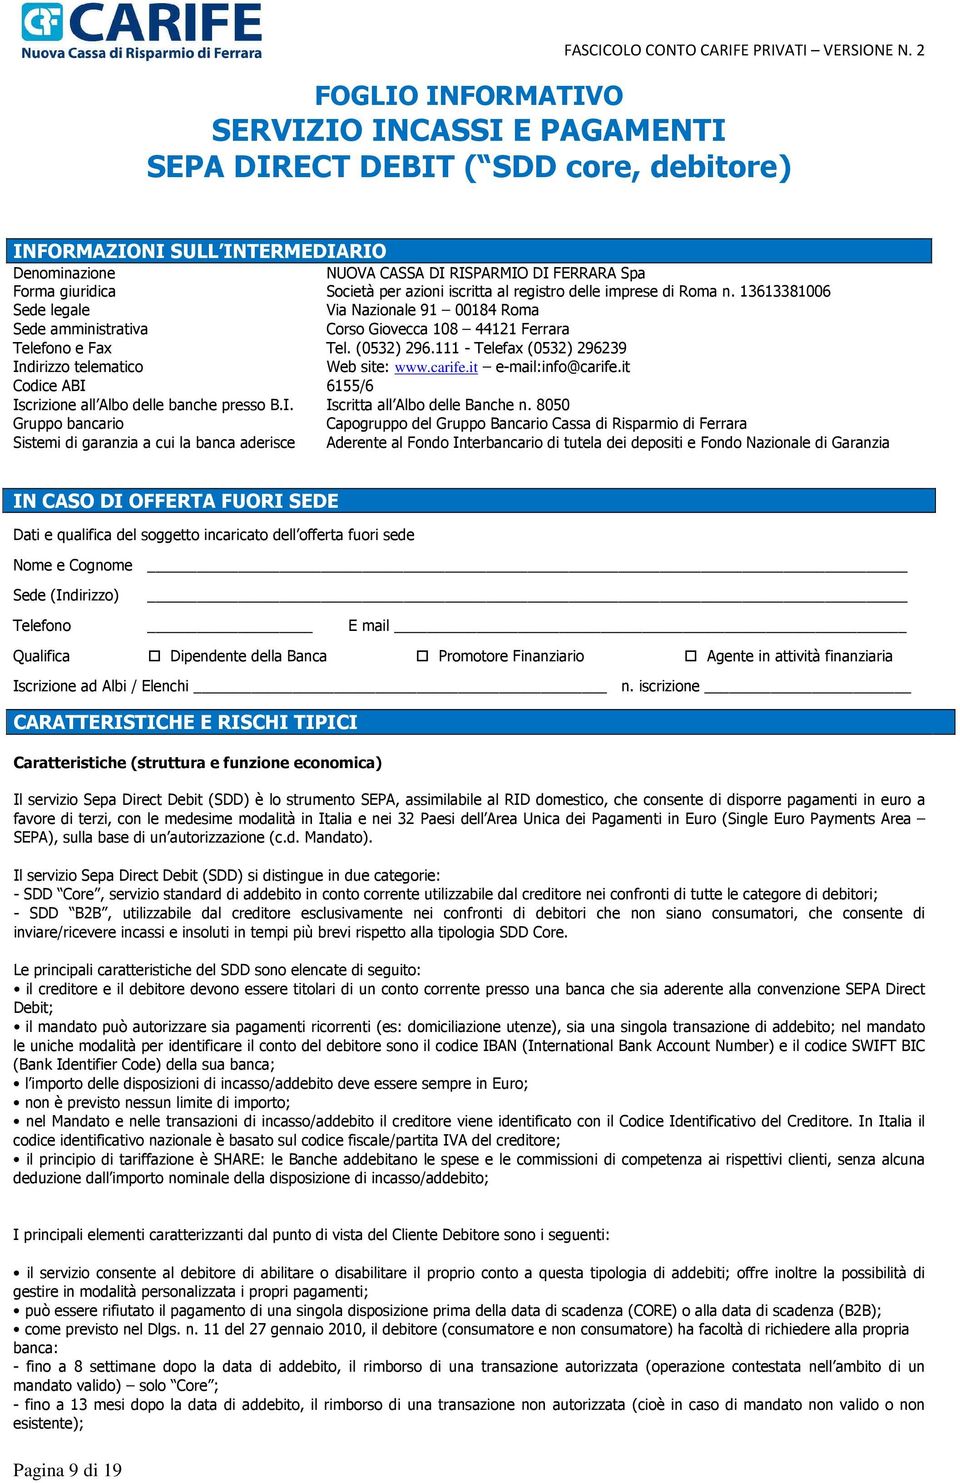 111 - Telefax (0532) 296239 Indirizzo telematico Web site: www.carife.it e-mail:info@carife.it Codice ABI 6155/6 Iscrizione all Albo delle banche presso B.I. Iscritta all Albo delle Banche n.